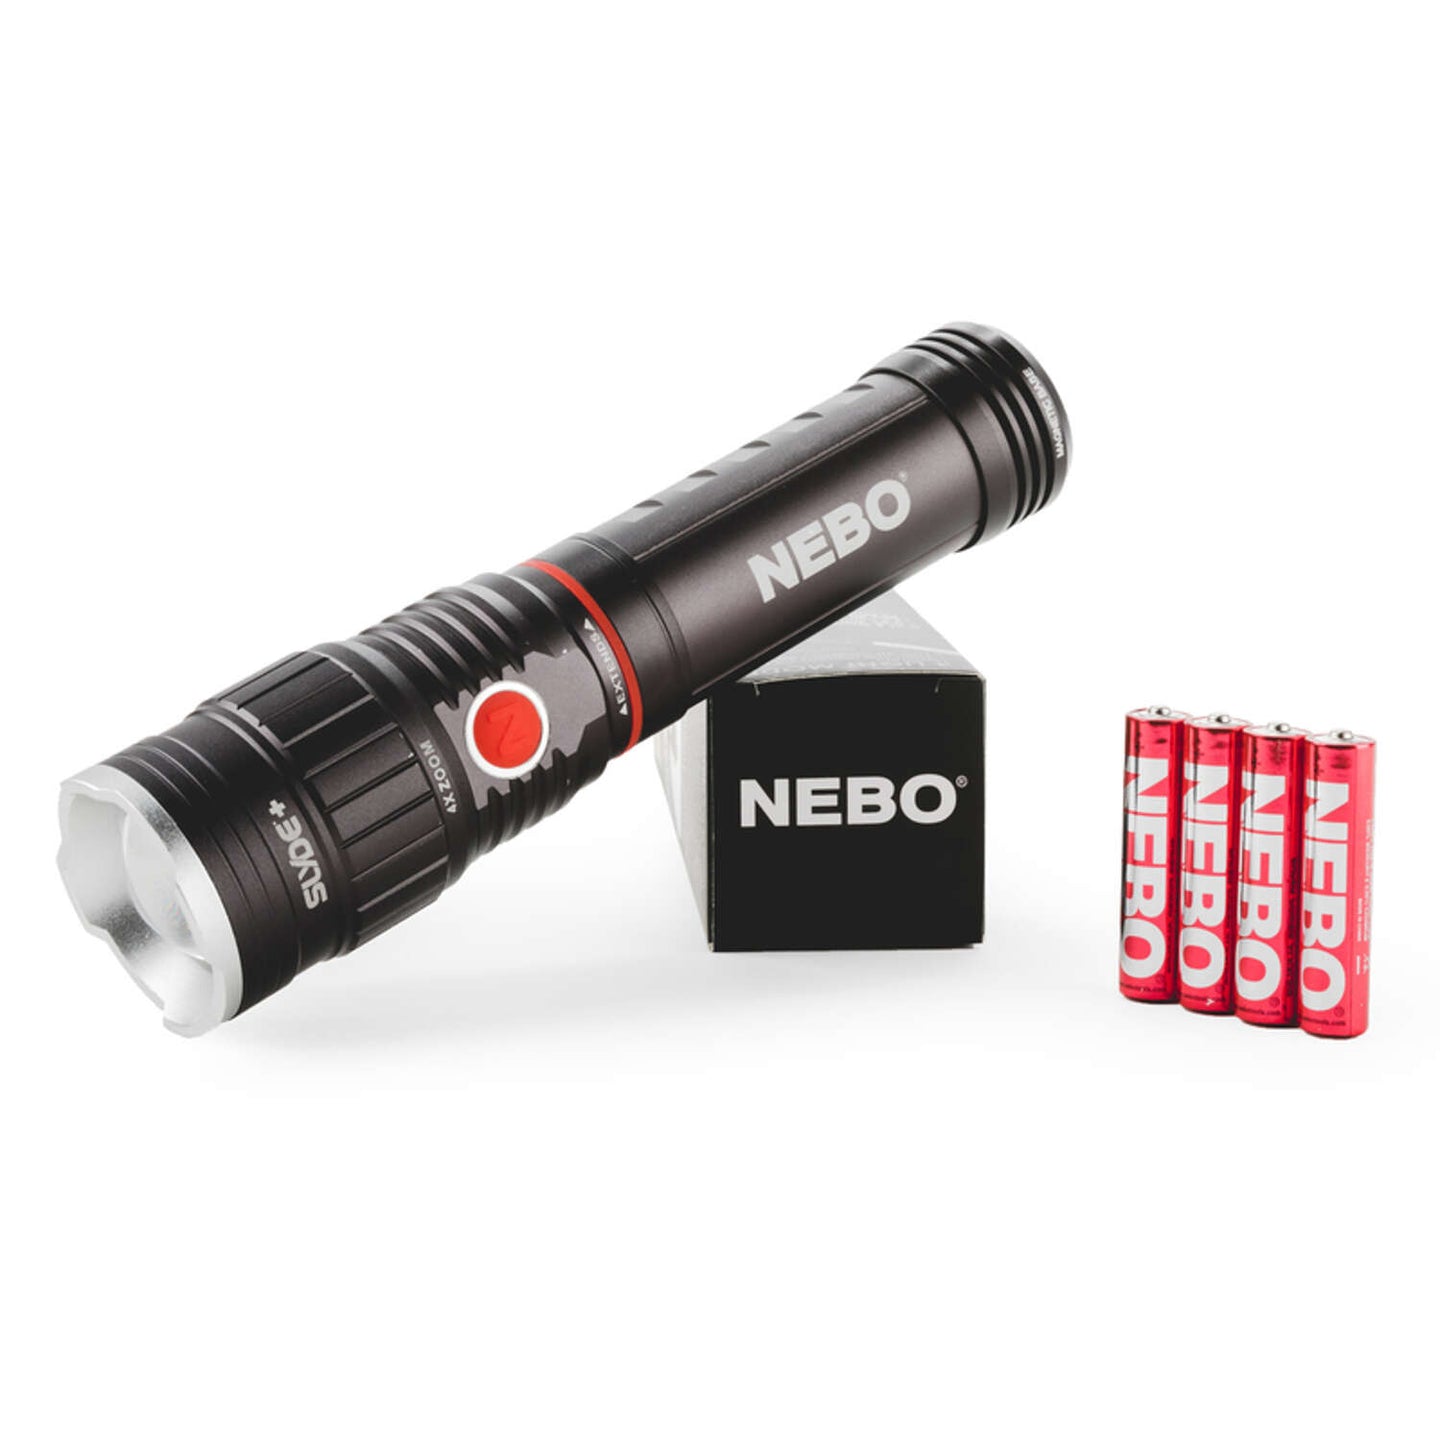 NEBO SLYDE+ Tactical LED Flashlight, Powerful 400-Lumen